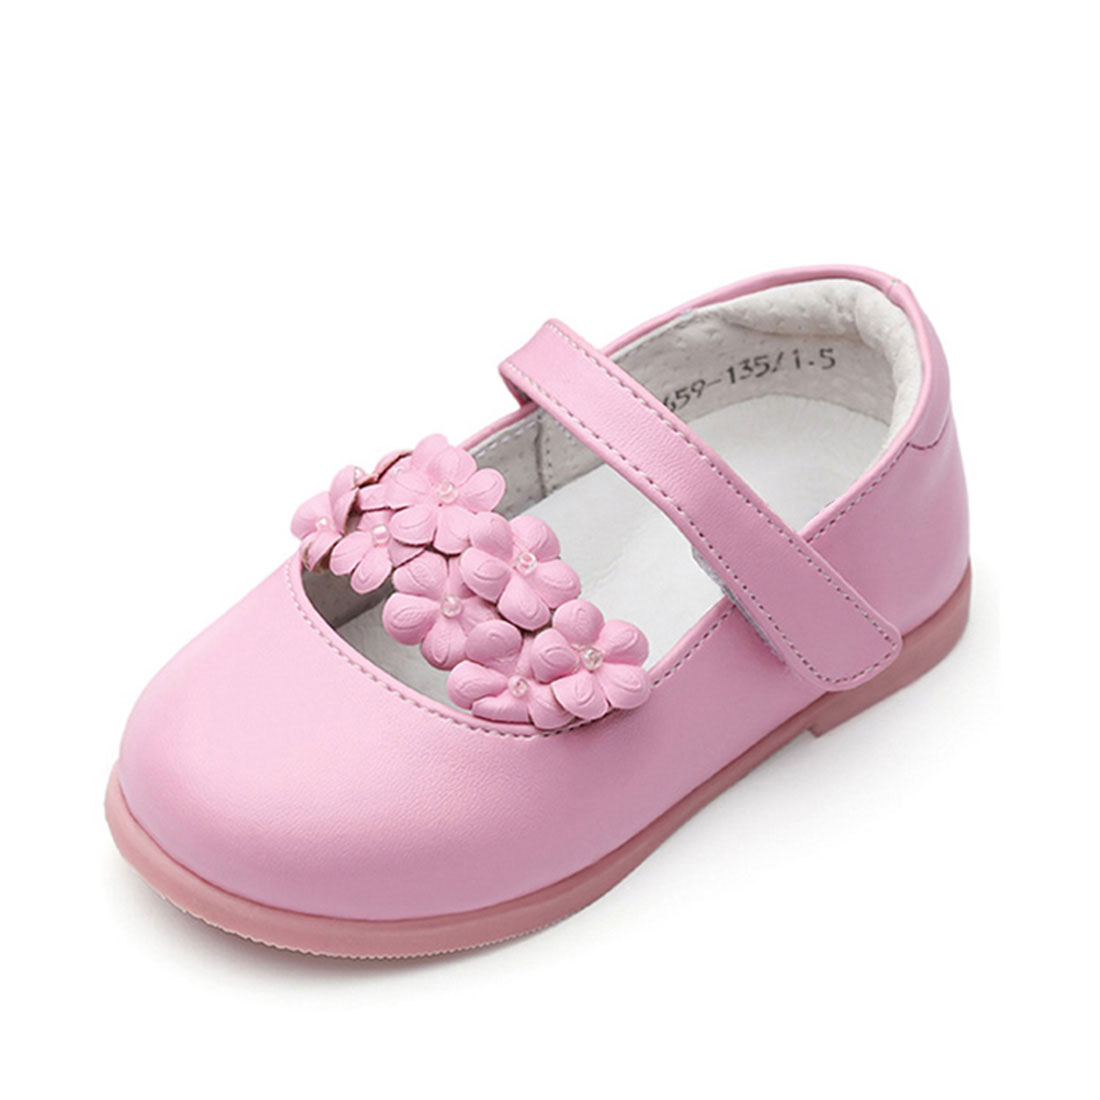 wholesale children's shoes usa